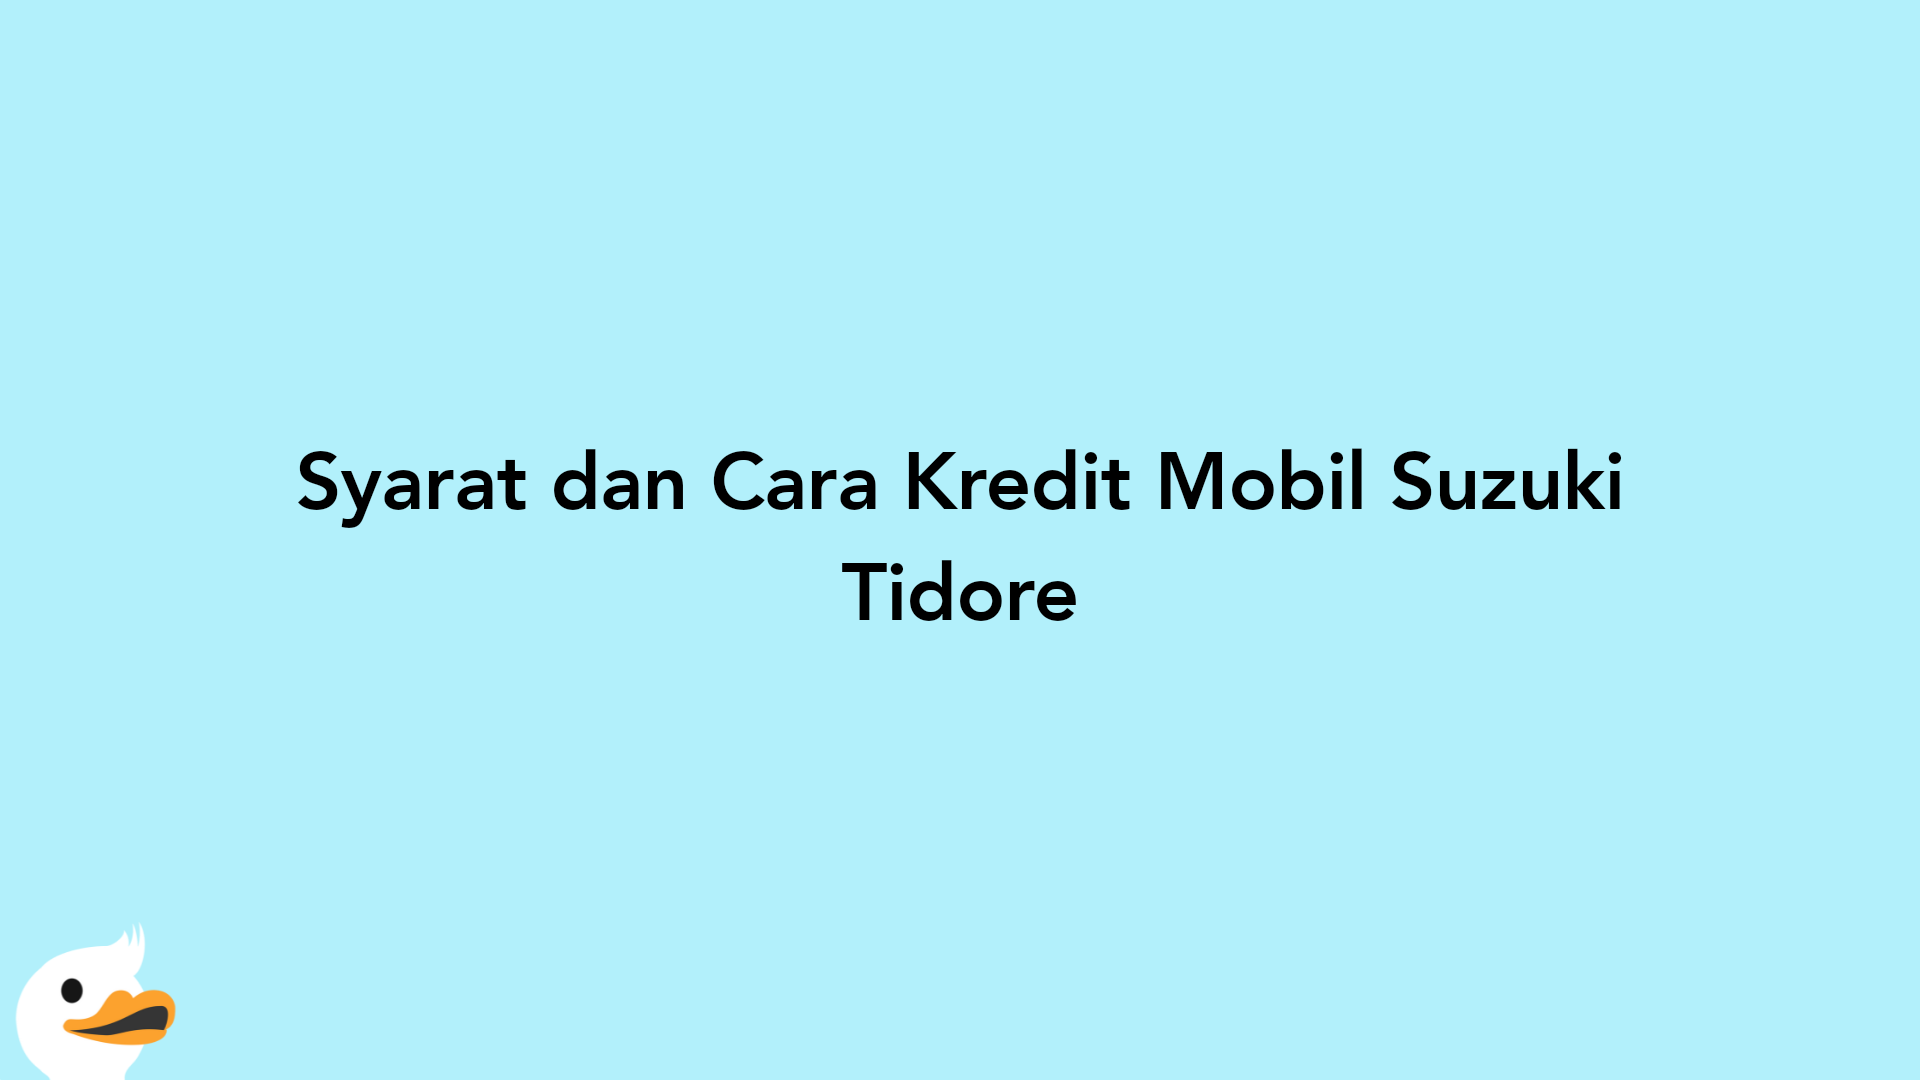 Syarat dan Cara Kredit Mobil Suzuki Tidore